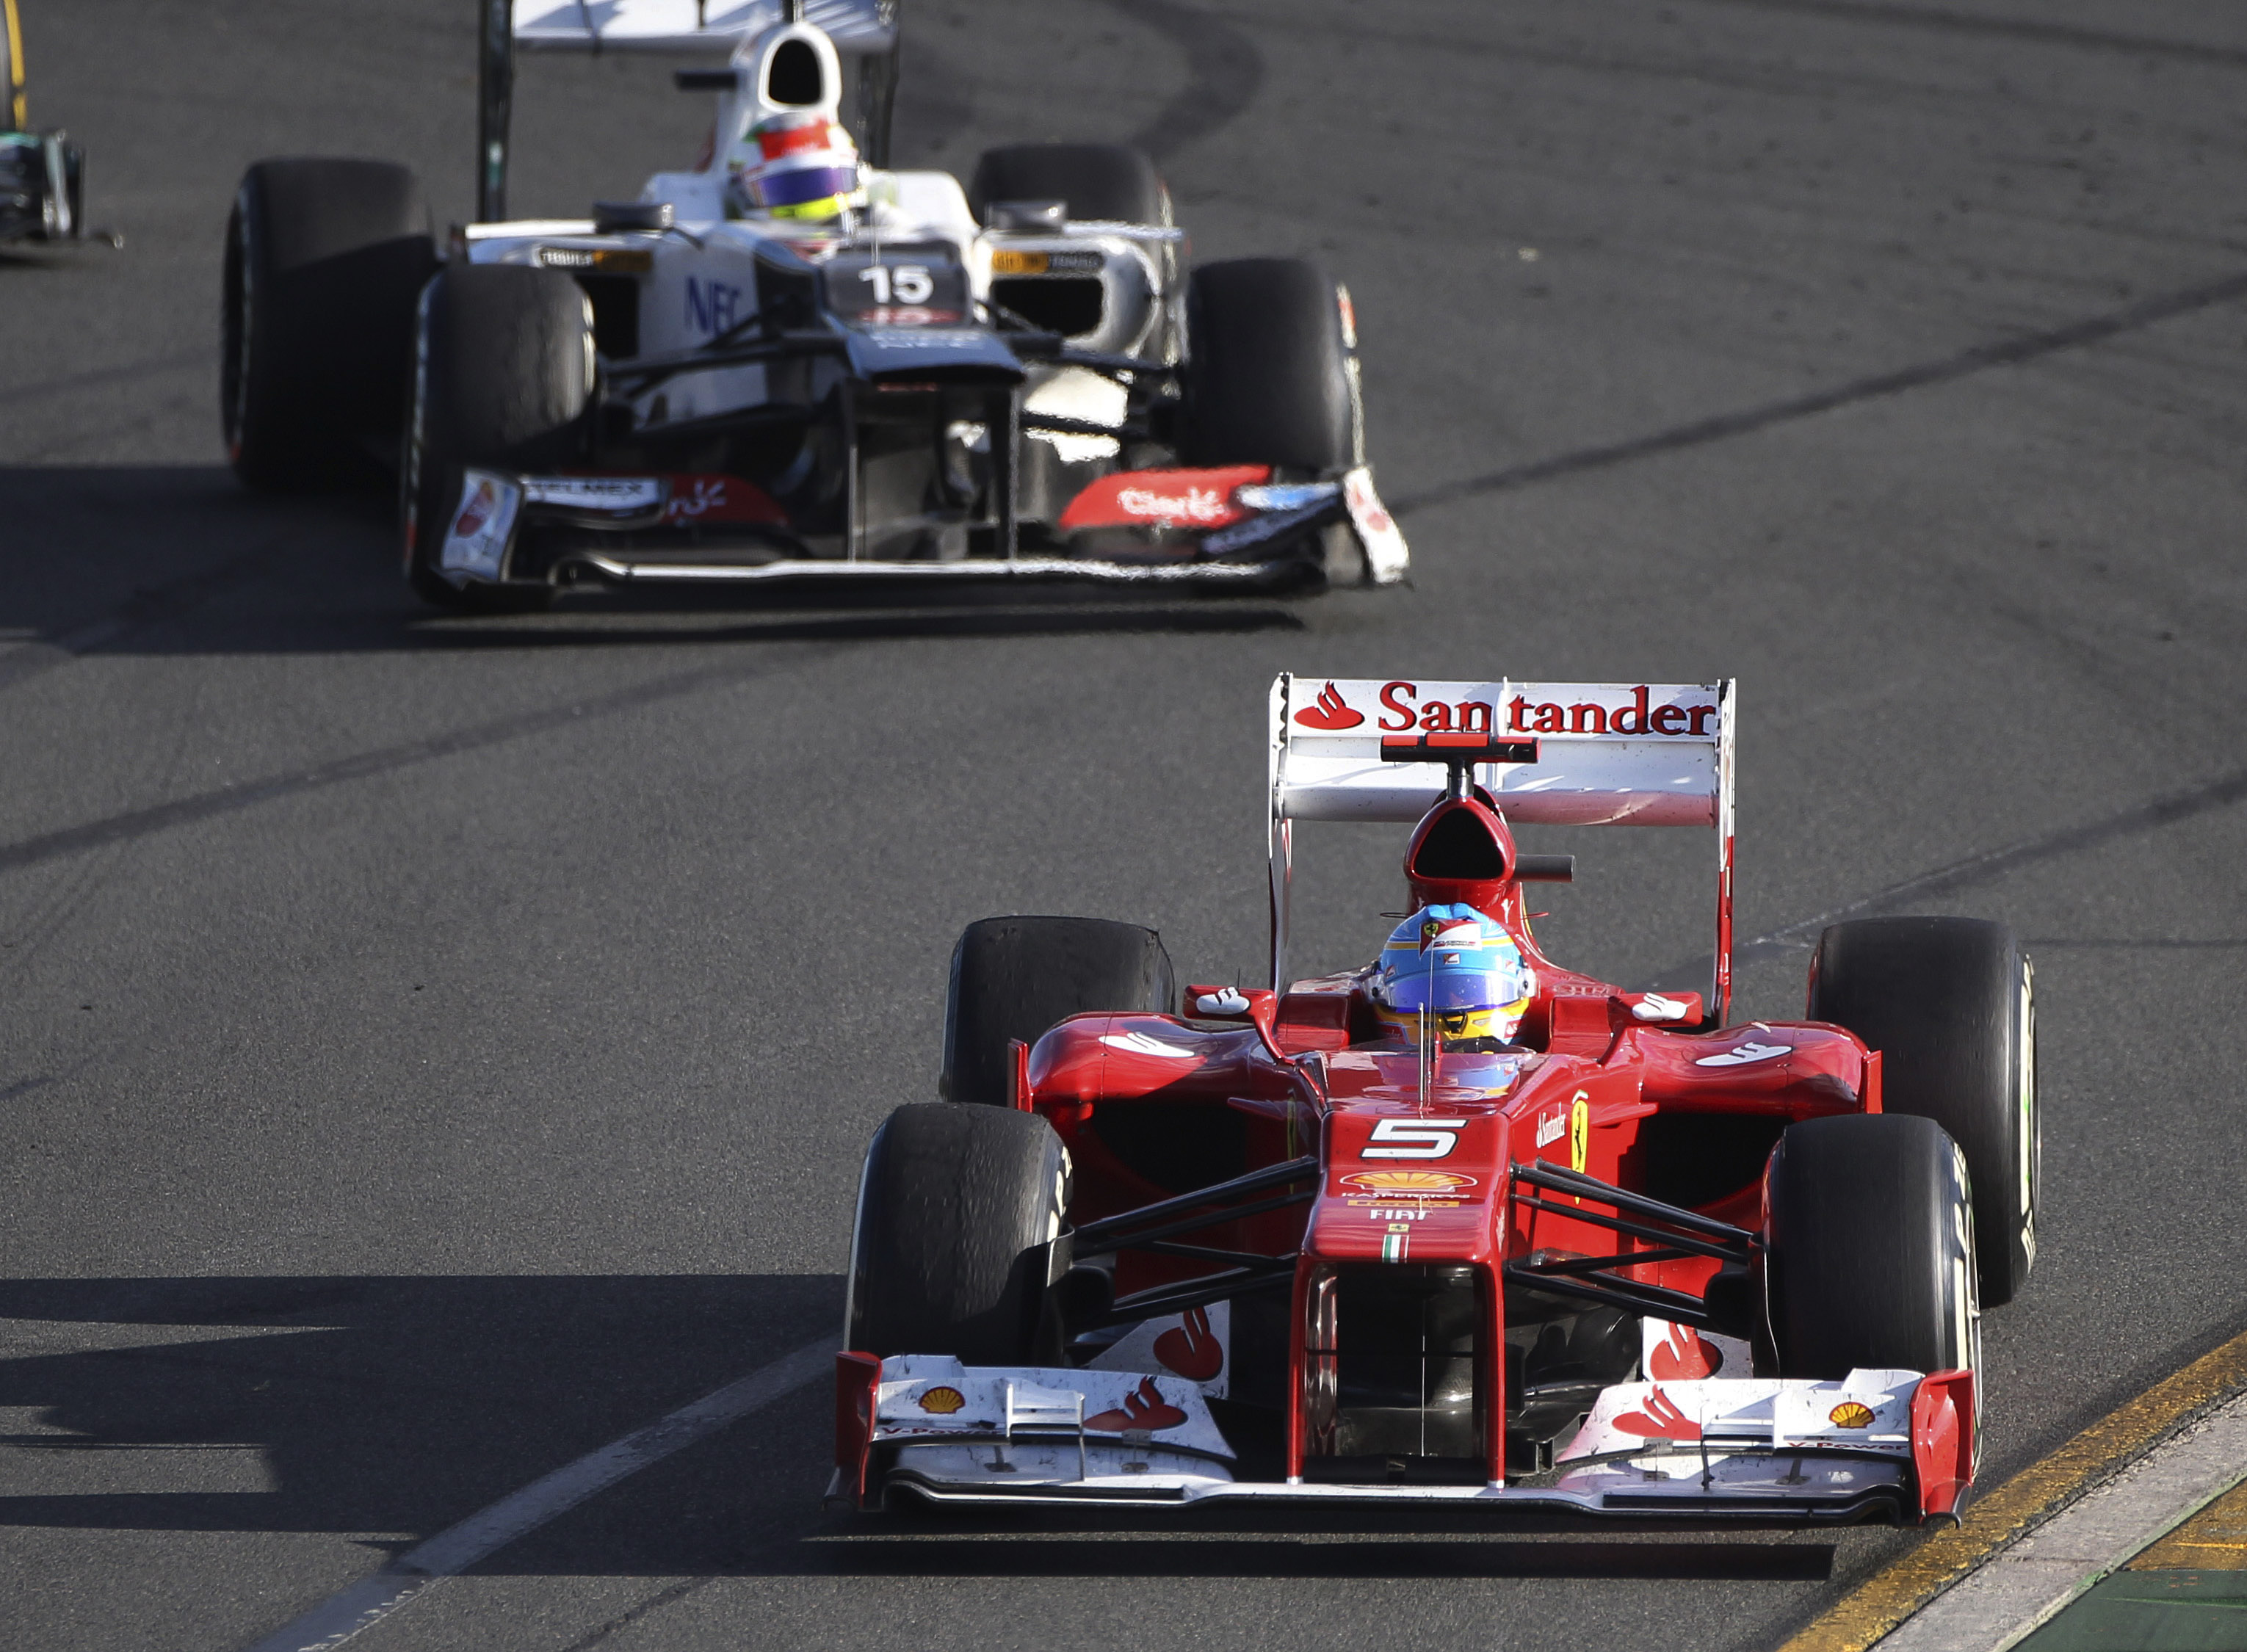 Tätt följd av skrällen Sergio Perez (Sauber) som kört smart och utmanade Alonso om segern. 